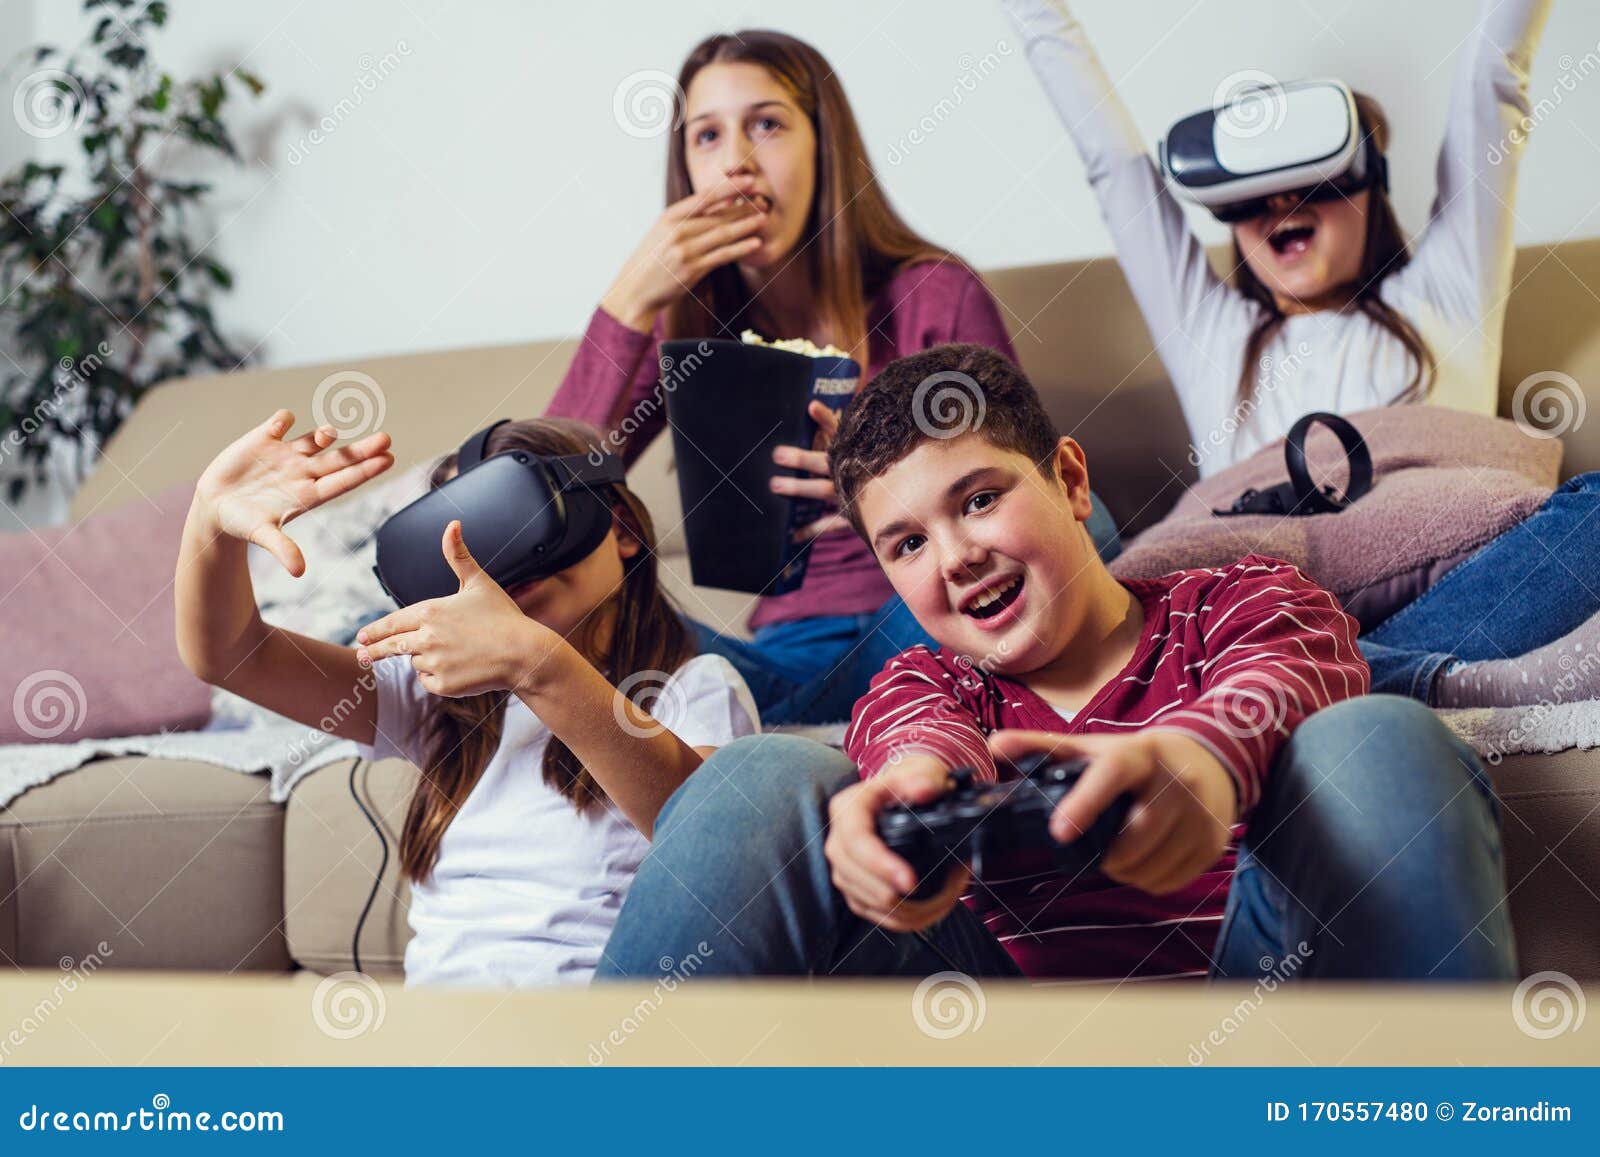 Adolescentes Jugando Videojuegos En Casa Foto De Archivo Imagen De Juegos Sonrisa